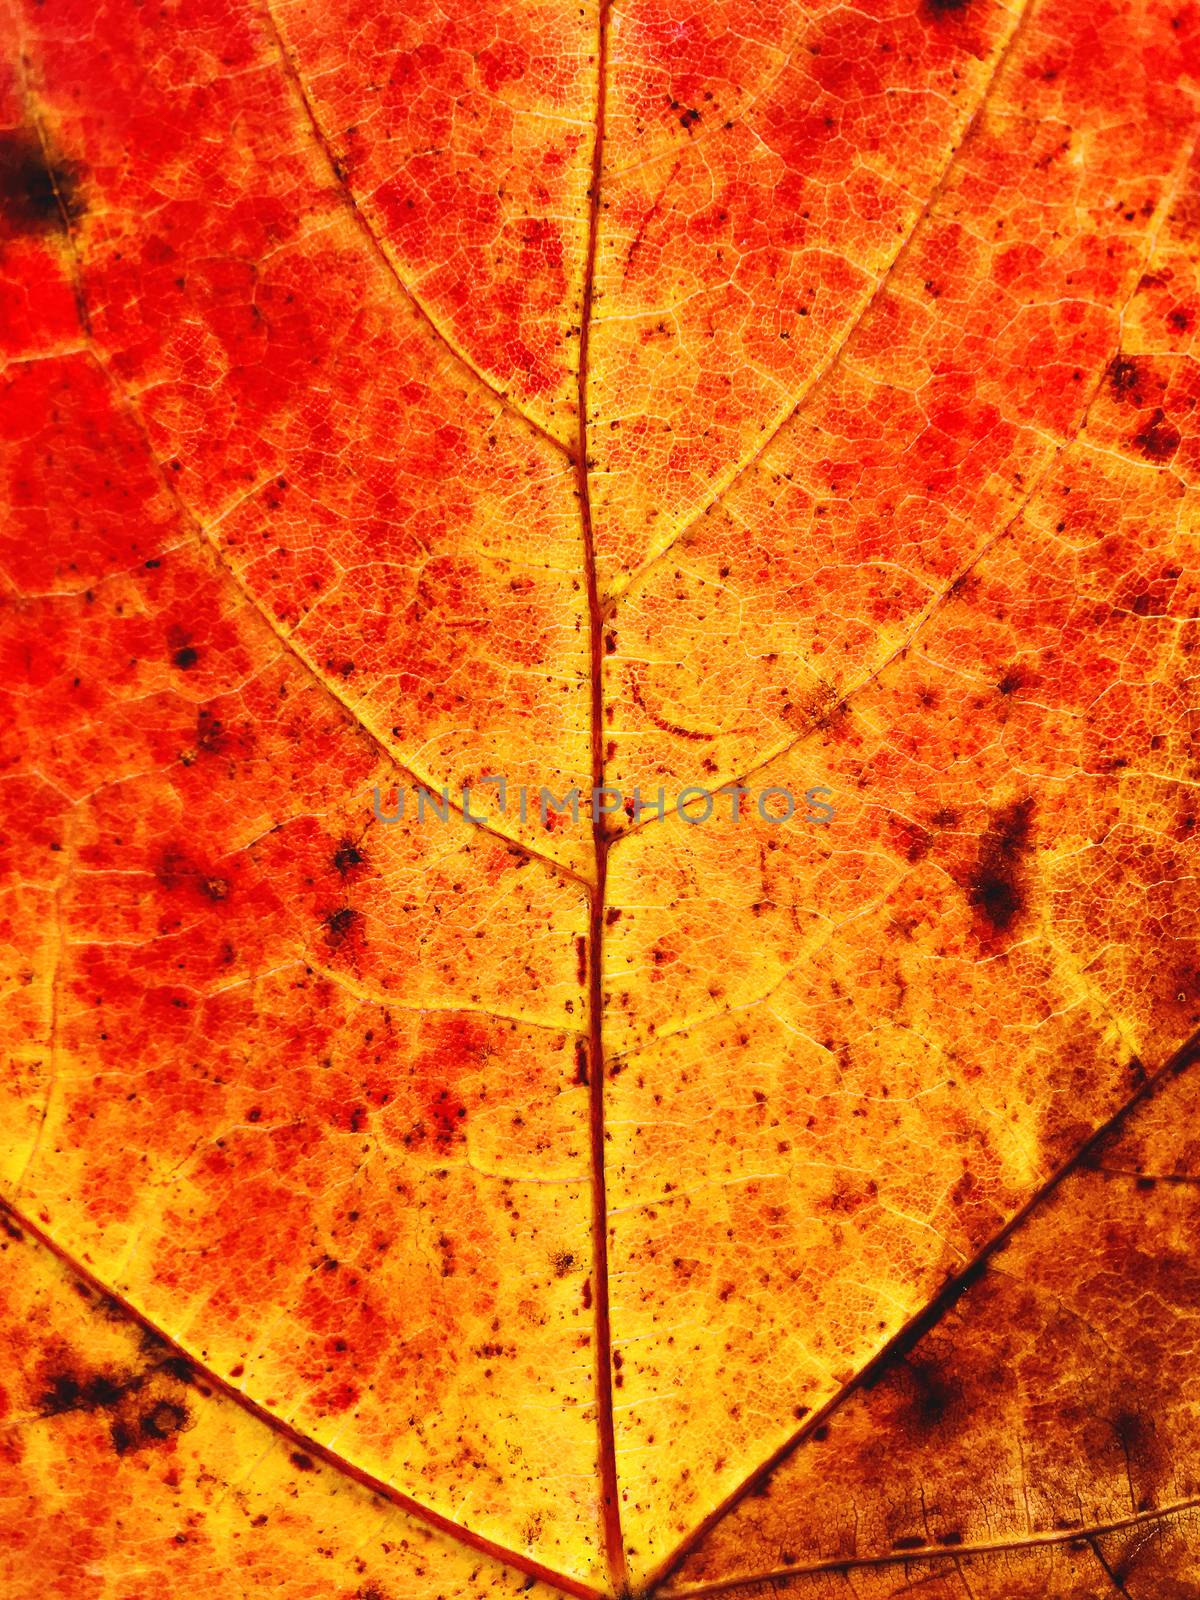 Close up photo of orange maple leaf. Fall season. Autumn red leaf.